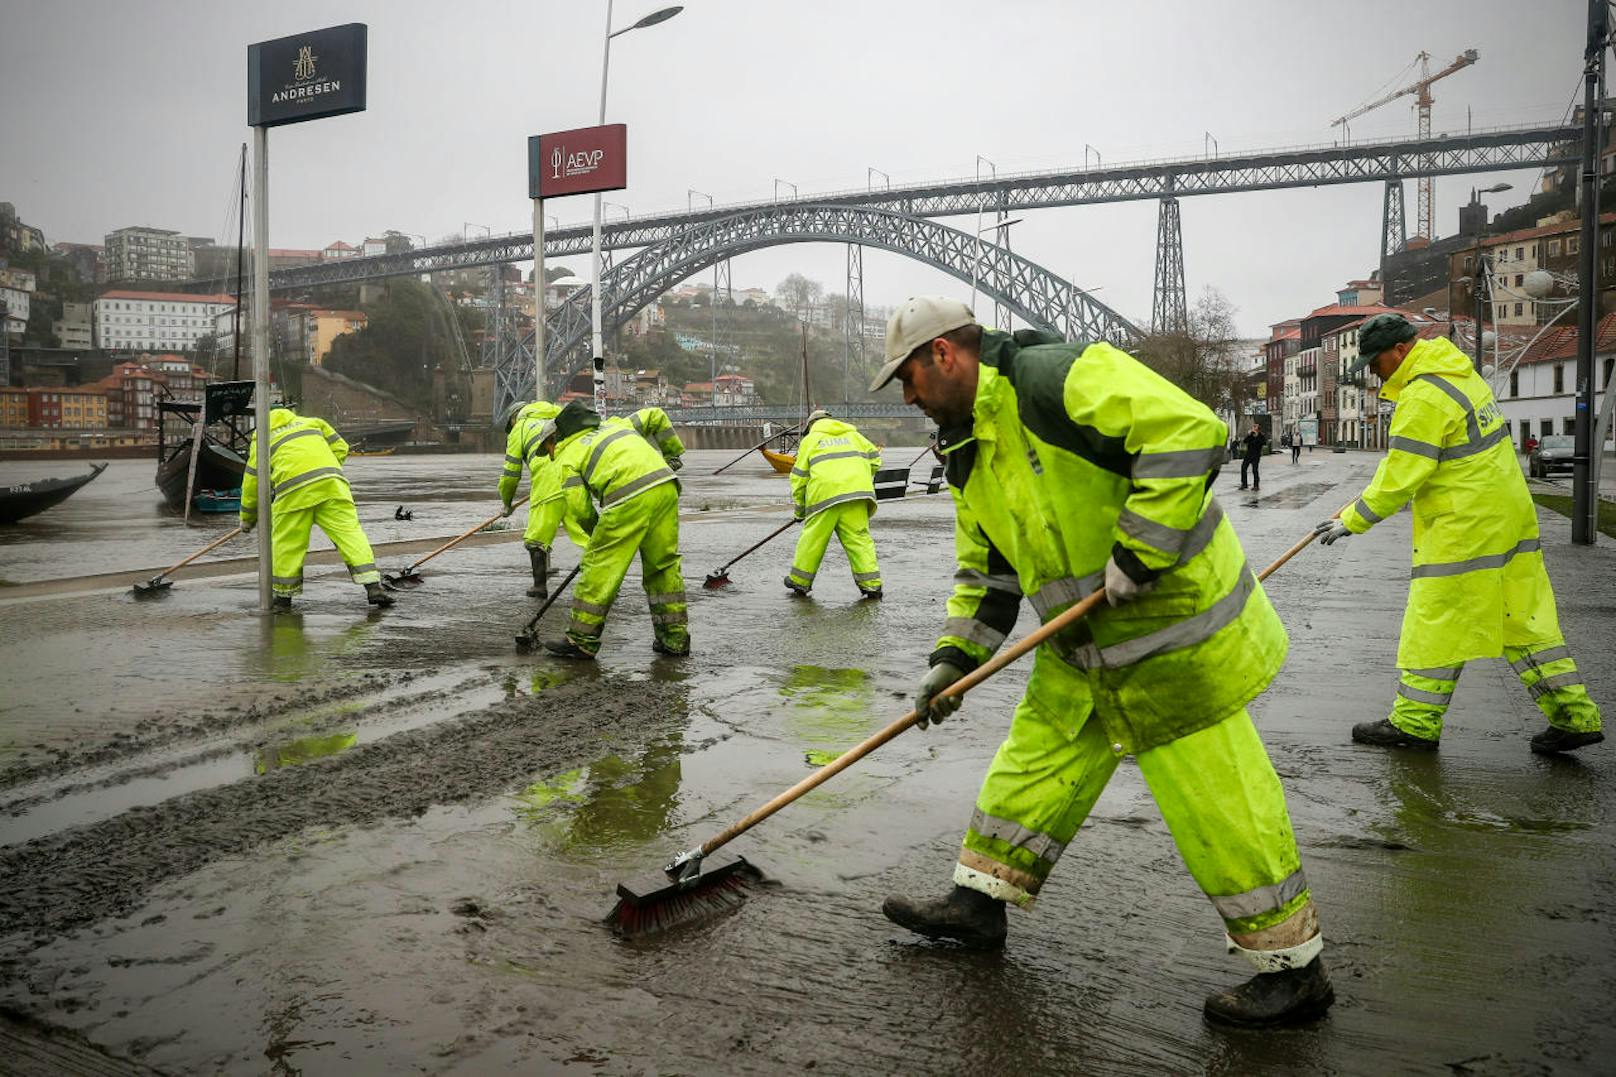 In Frankreich, Spanien und Portugal haben am Samstag erneut schwere Unwetter gewütet. In Spanien gab es nach Behördenangaben drei Tote, in Frankreich einen Vermissten.